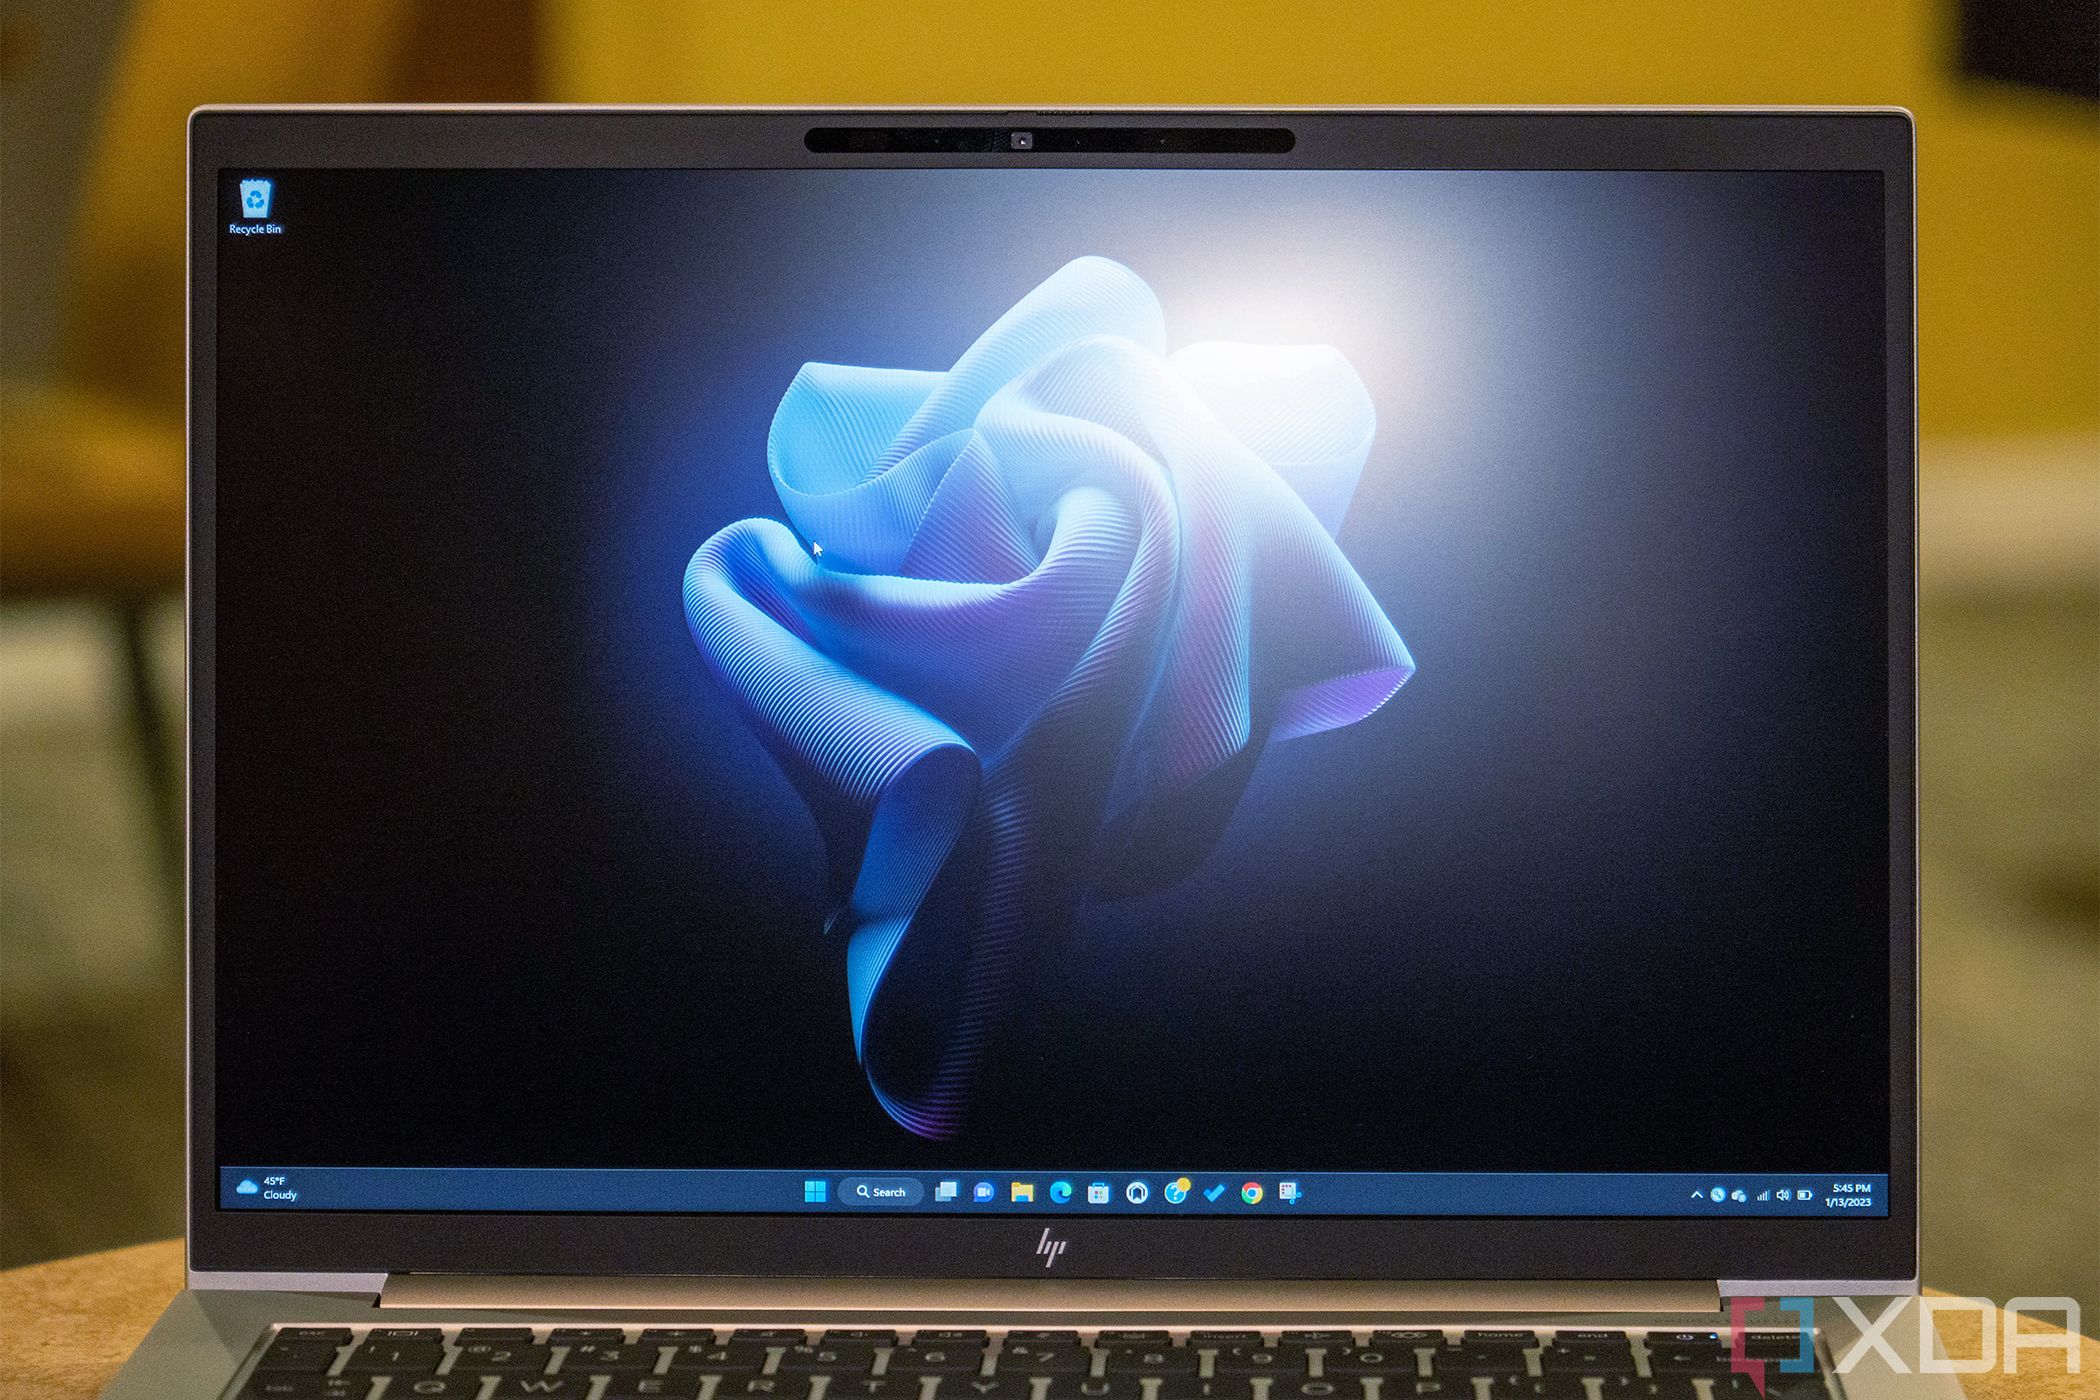 Close up of laptop display